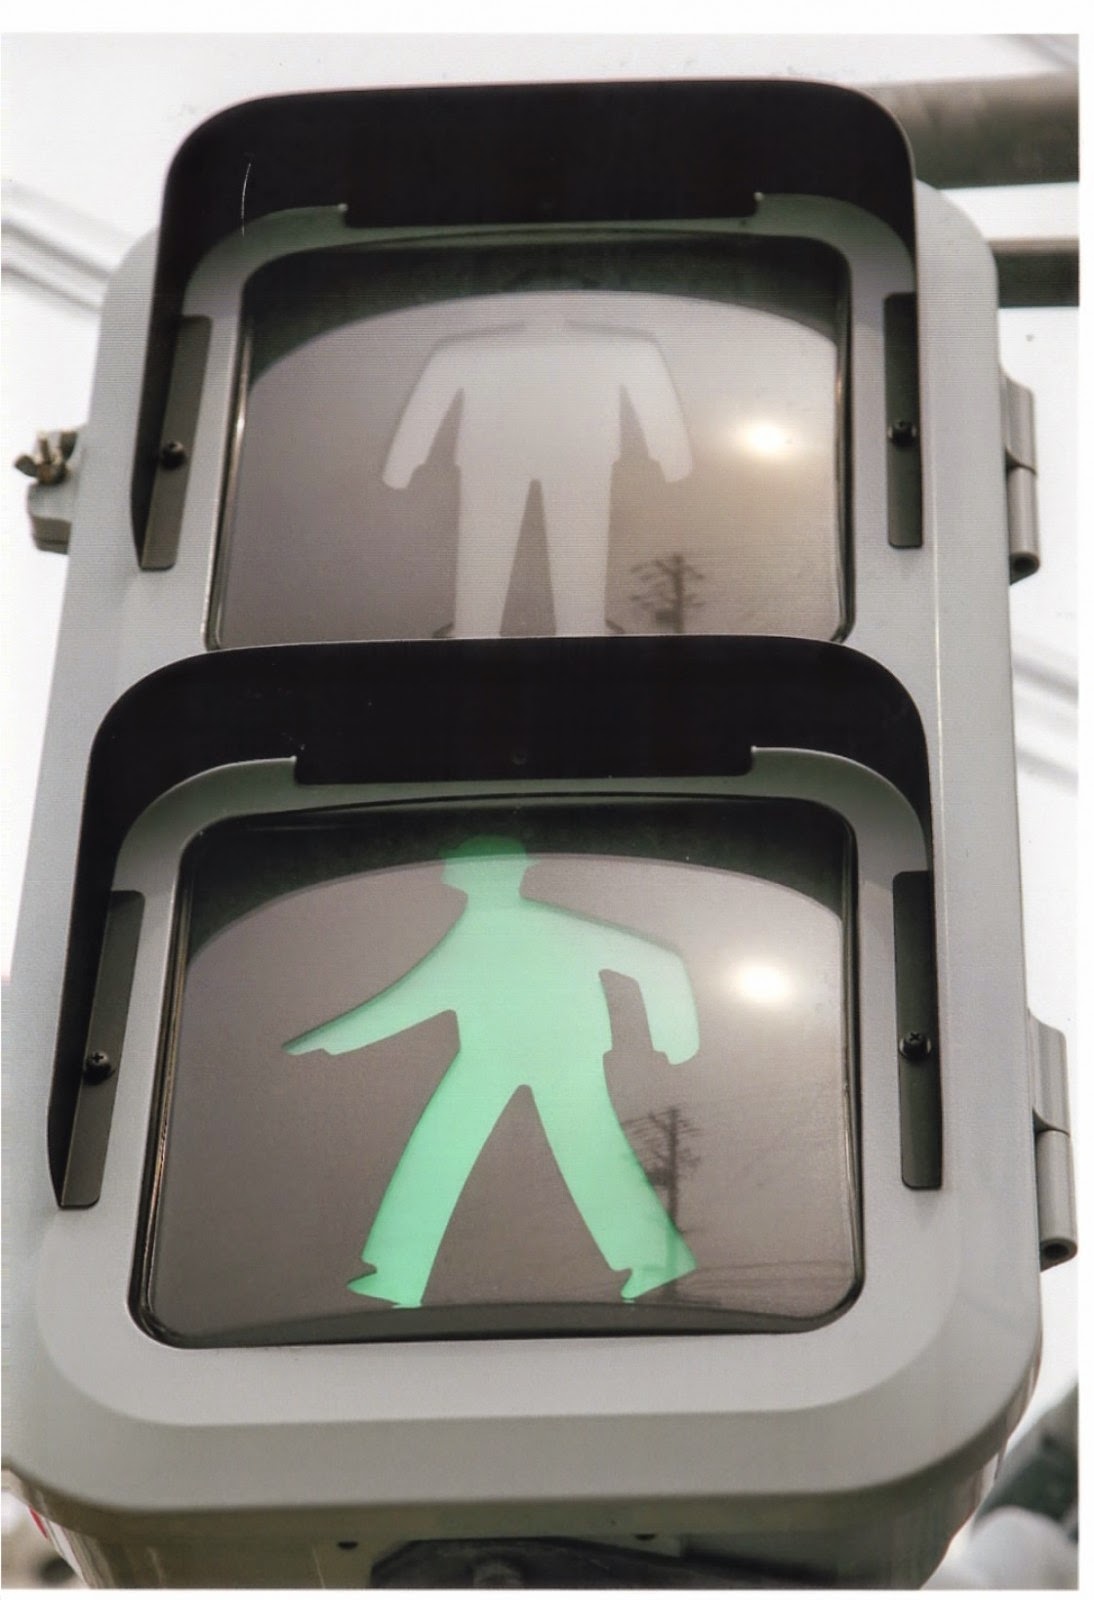 歩行者信号の画像